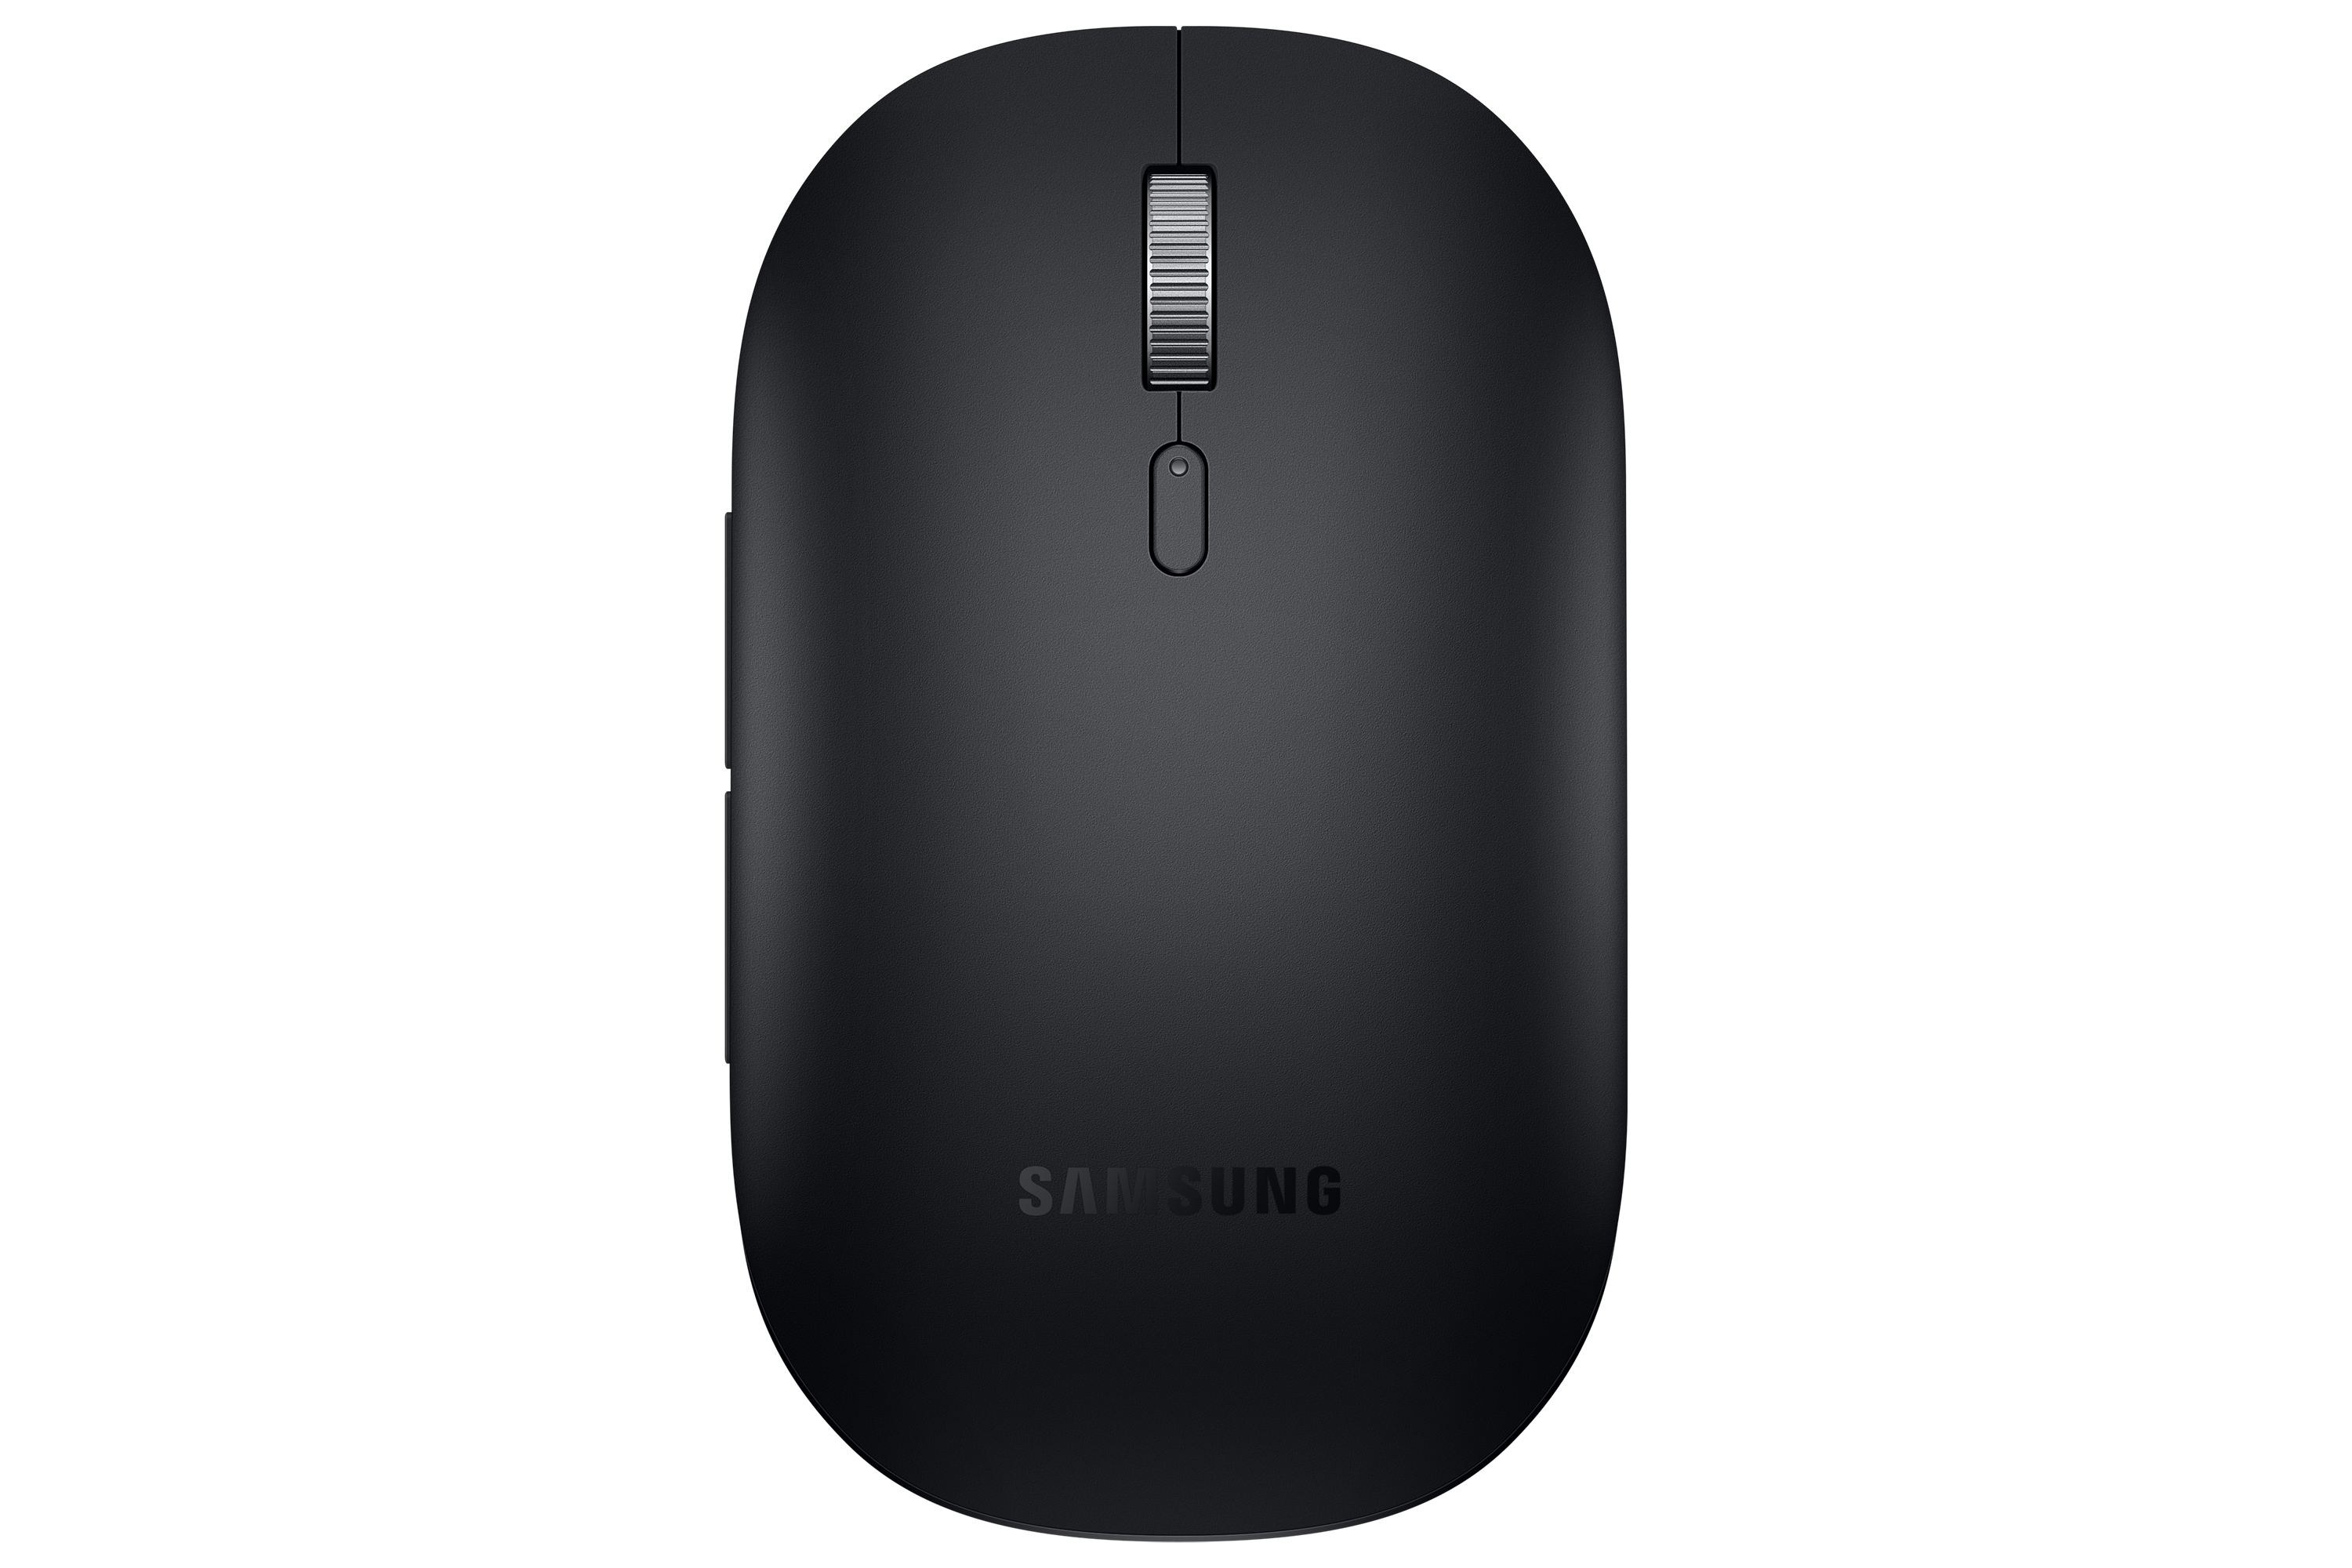 Bluetooth Mouse Slim, Black Computing Accessories - EJ-M3400DBEGUS |  Samsung US